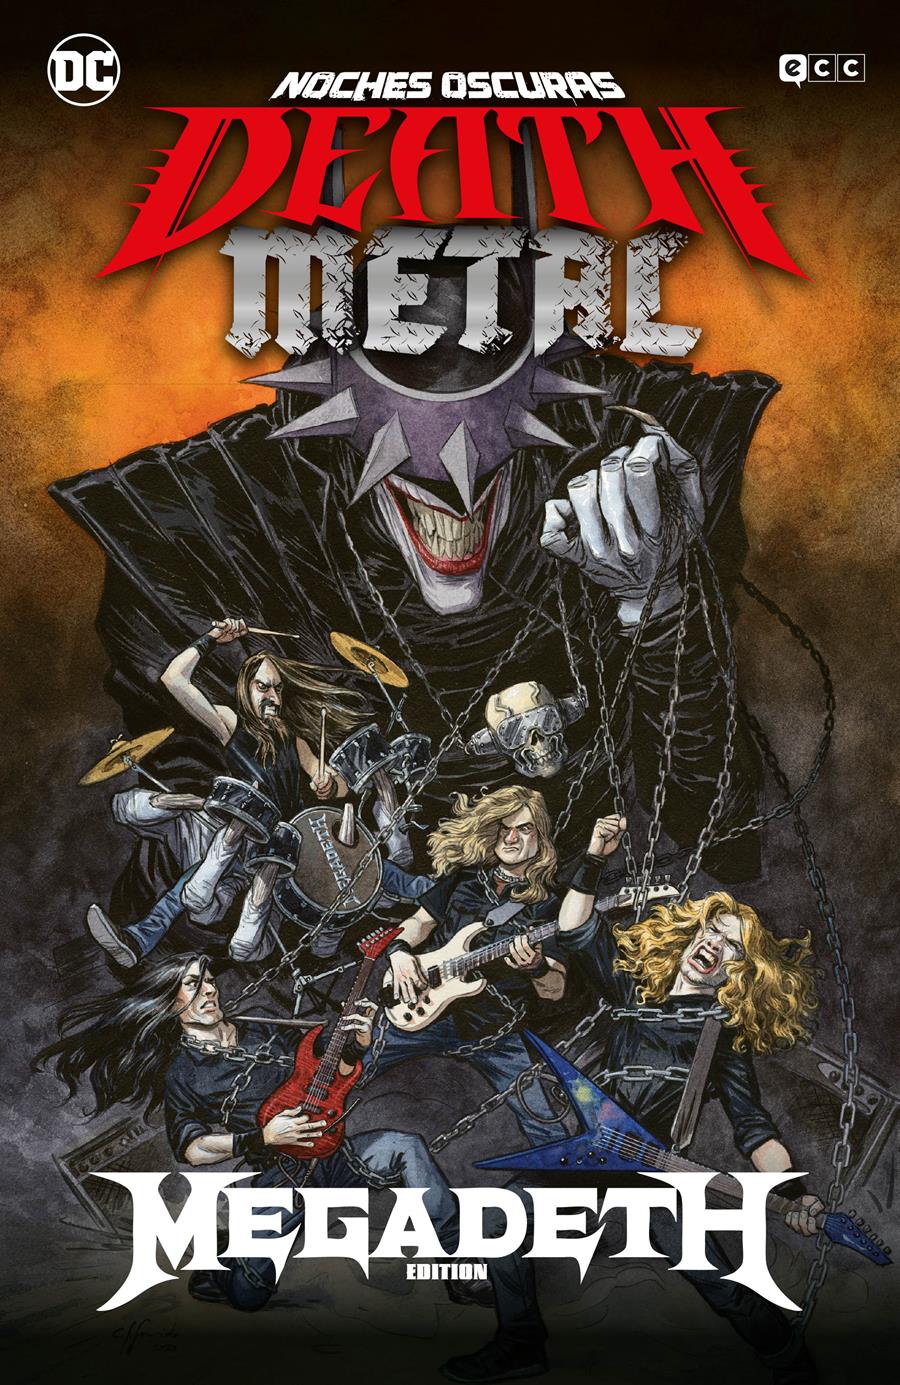 Noches oscuras: Death Metal núm. 01 de 7 (Megadeth Band Edition) (Rústica) | N0321-ECC62 | Scott Snyder, Greg Capullo | Terra de Còmic - Tu tienda de cómics online especializada en cómics, manga y merchandising